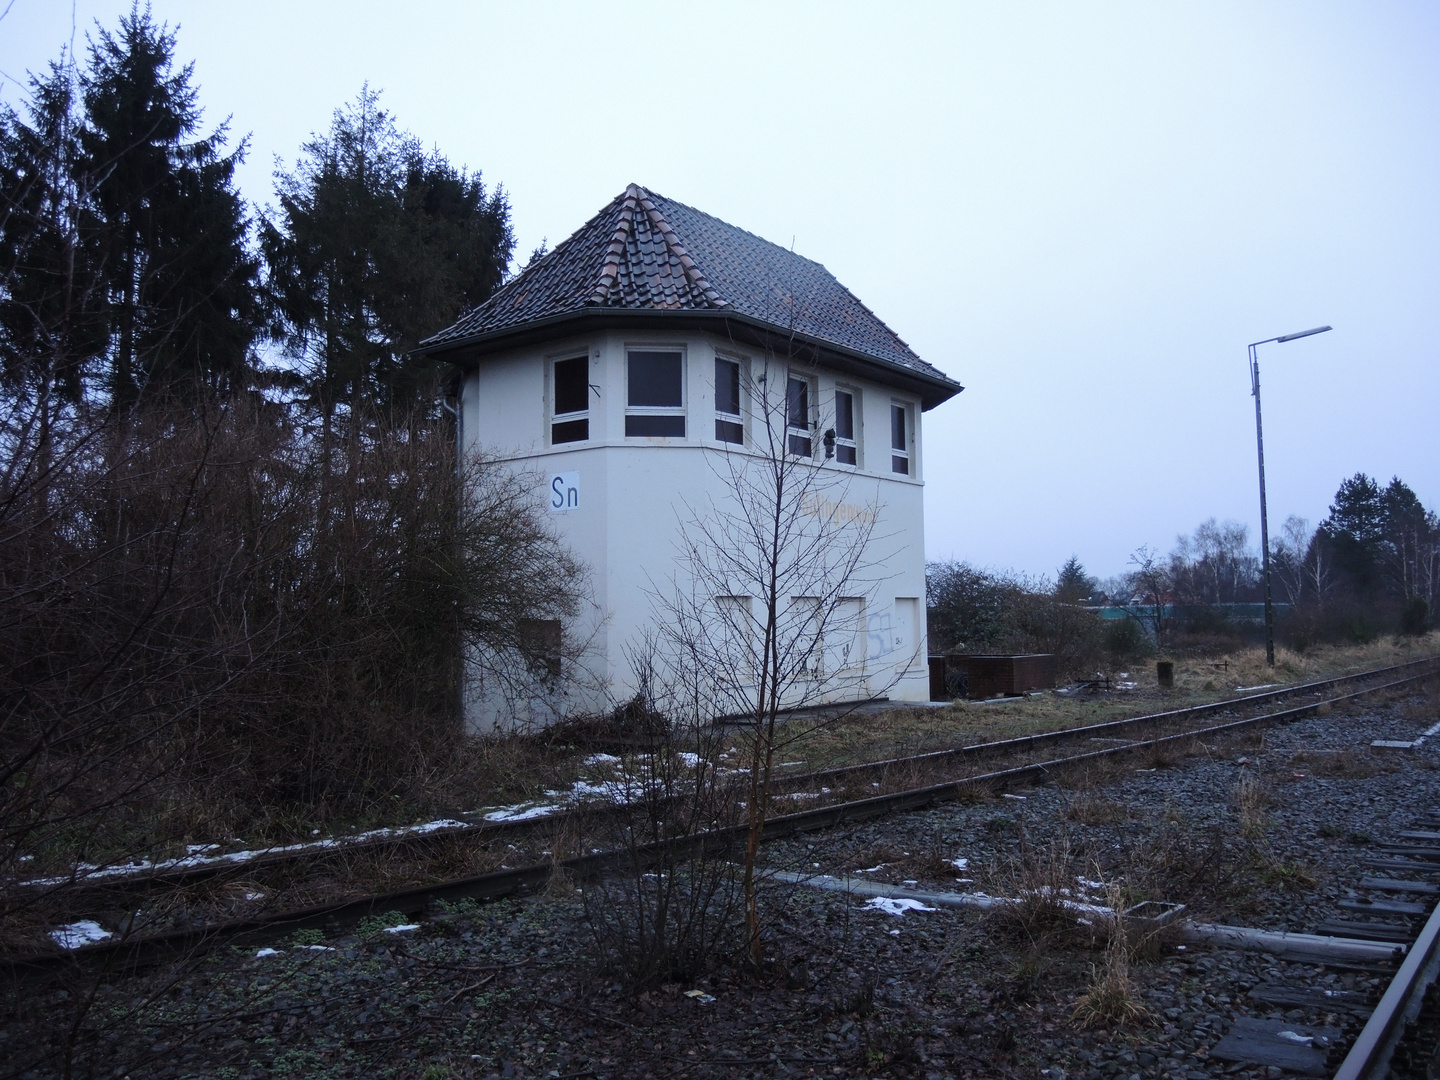 Bahnhof Sulingen 2016 II - Bahnstrecke Nienburg - Sulingen